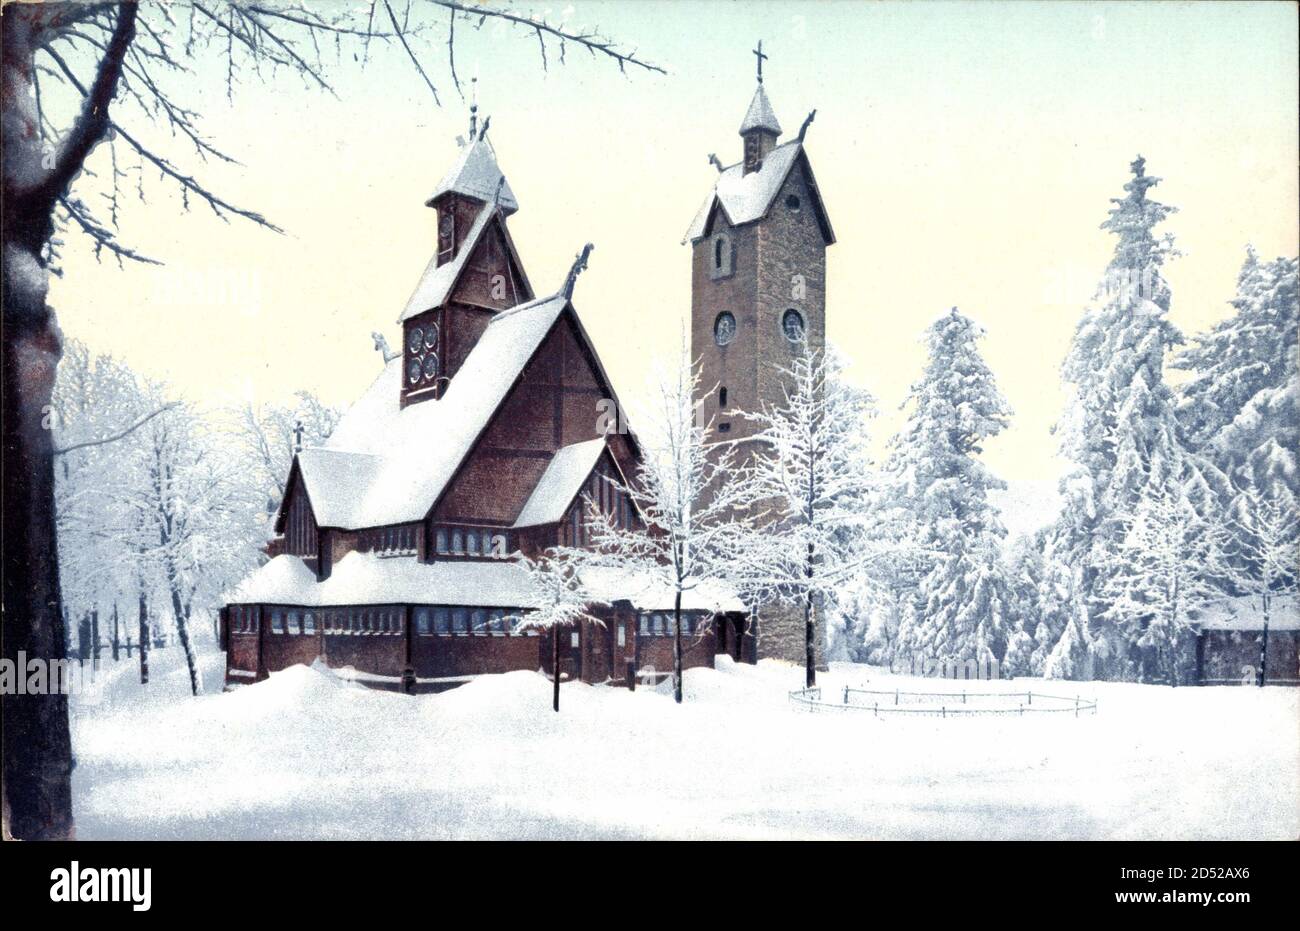 Riesengebirge Schlesien, Die Kirche Wang im Winter, Schnee | usage worldwide Stock Photo